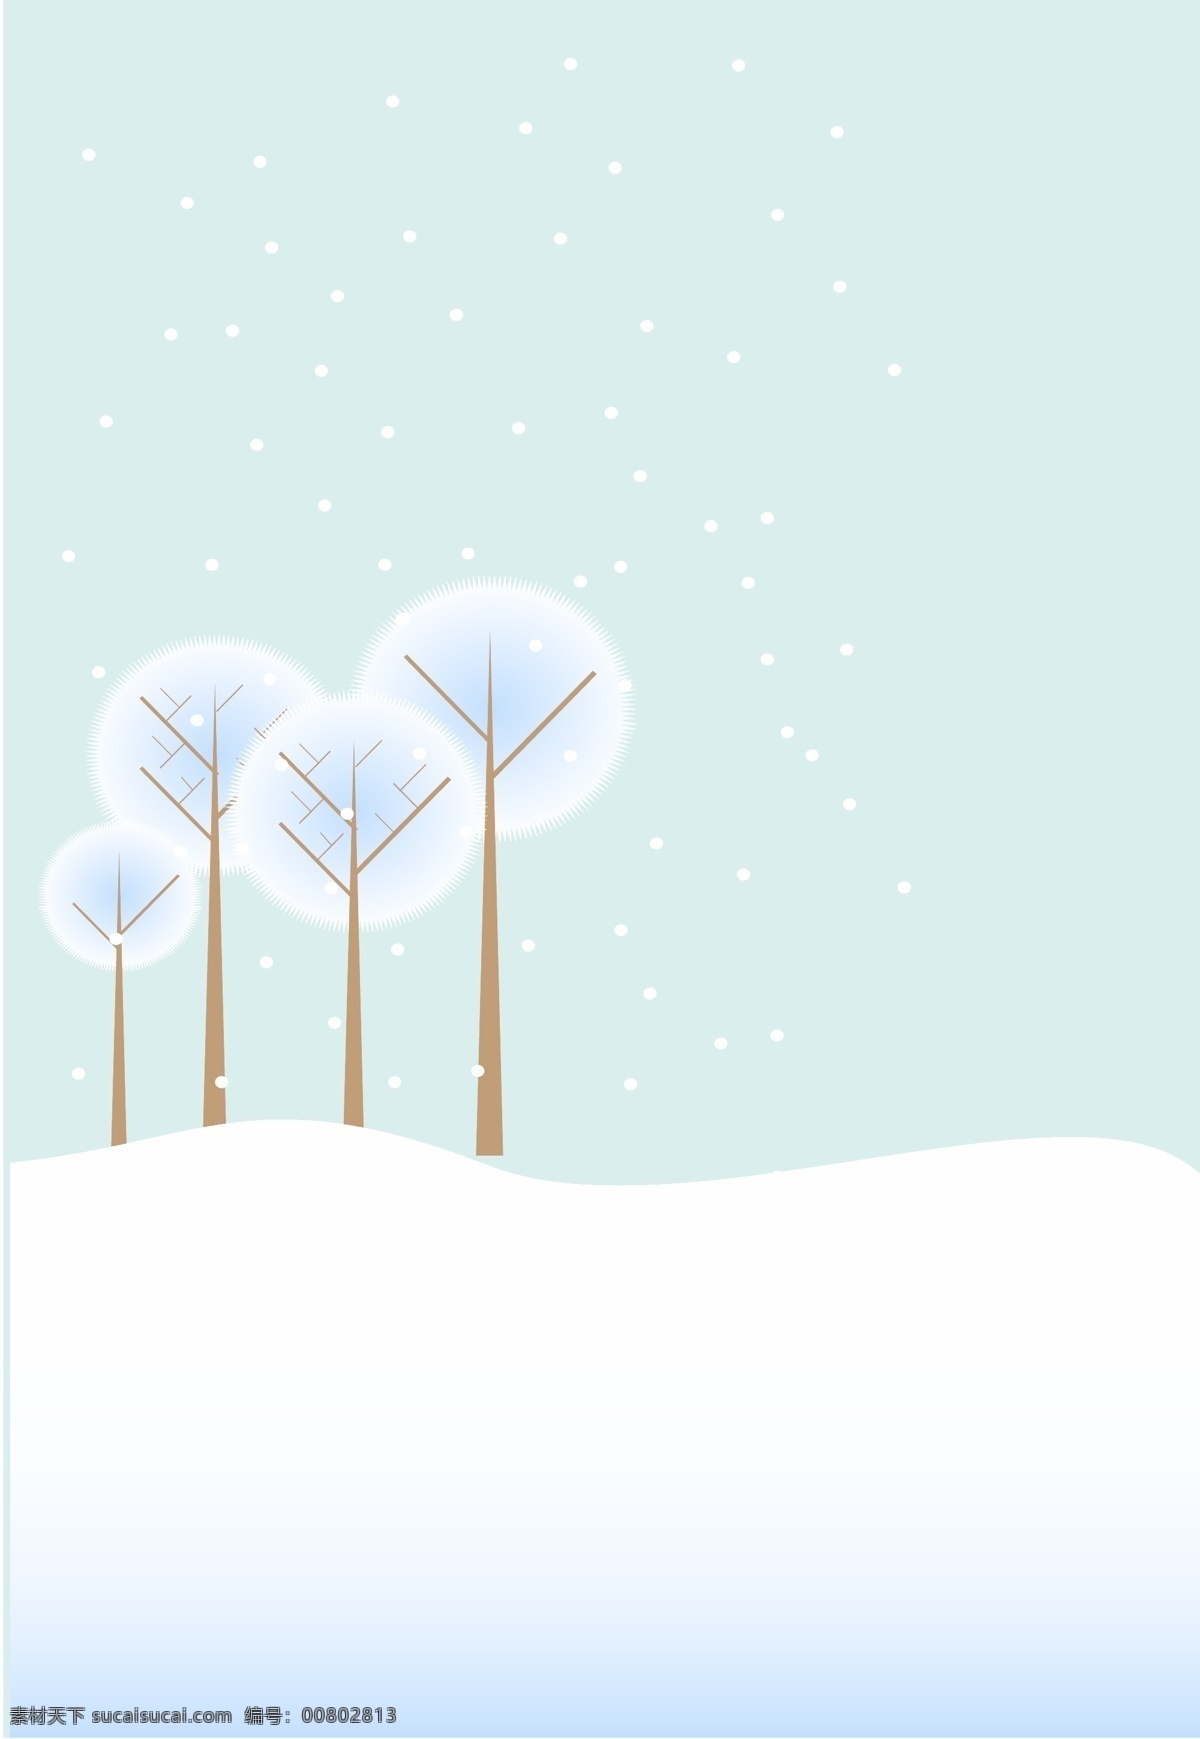 矢量 简约 卡通 圣诞节 雪景 背景 蓝色 清新 文艺 冬天 海报 童趣 手绘